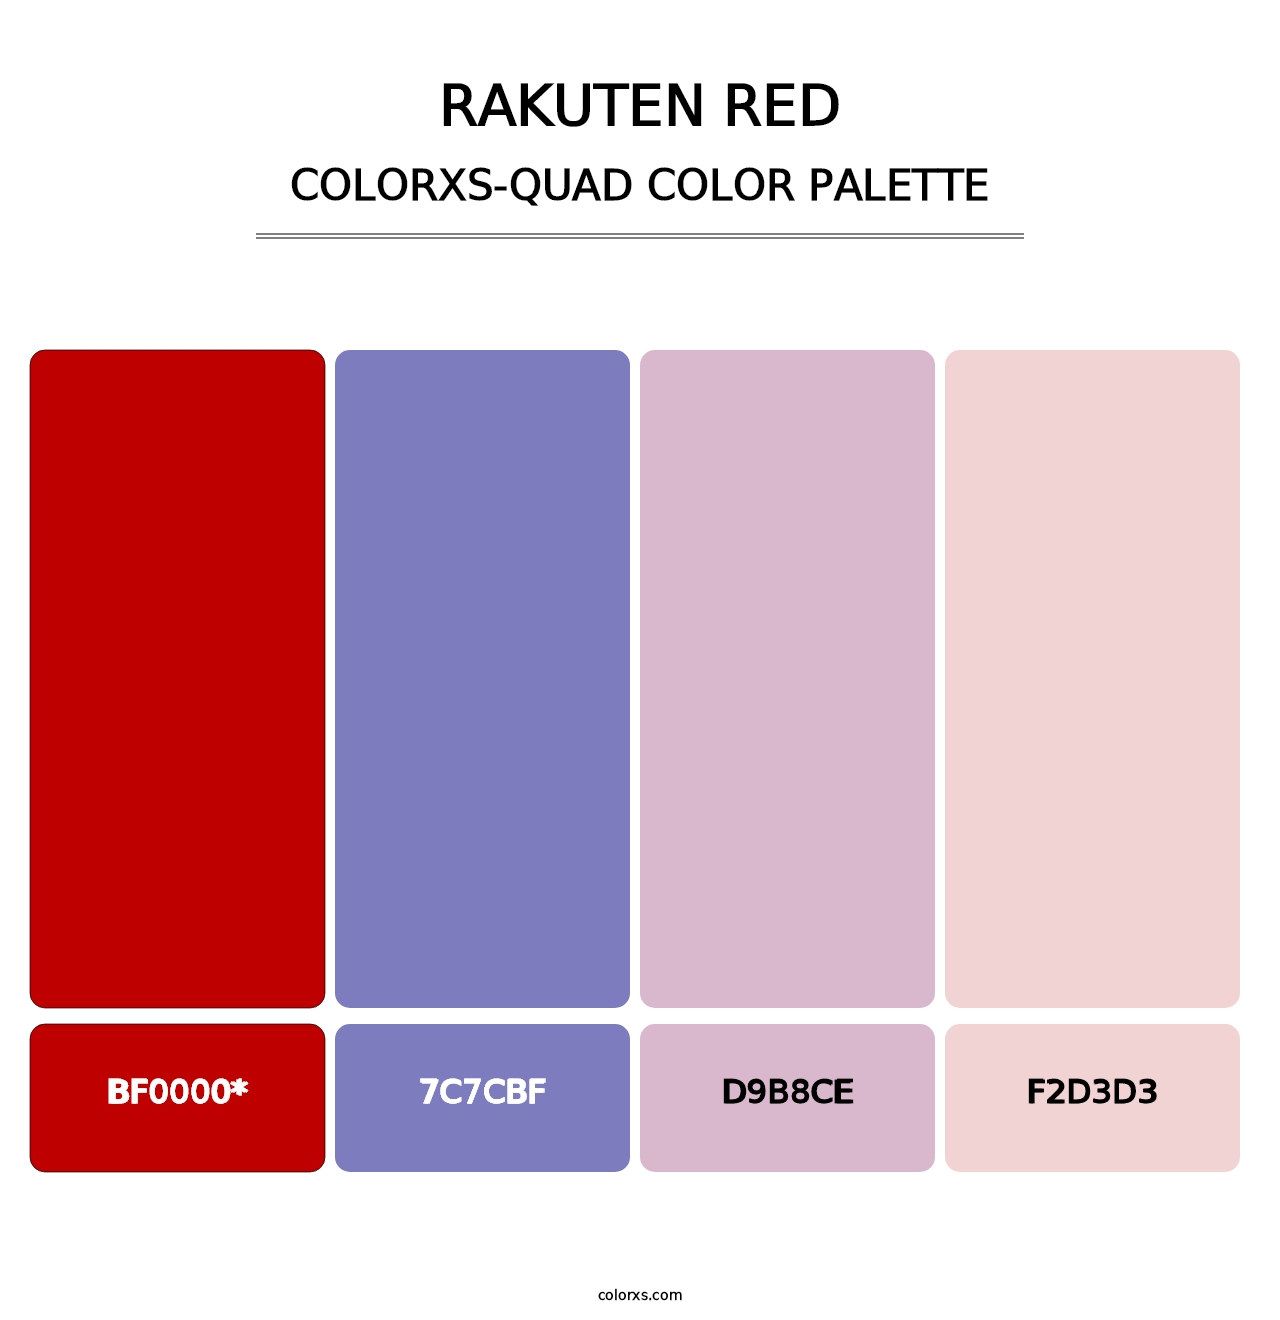 Rakuten Red - Colorxs Quad Palette